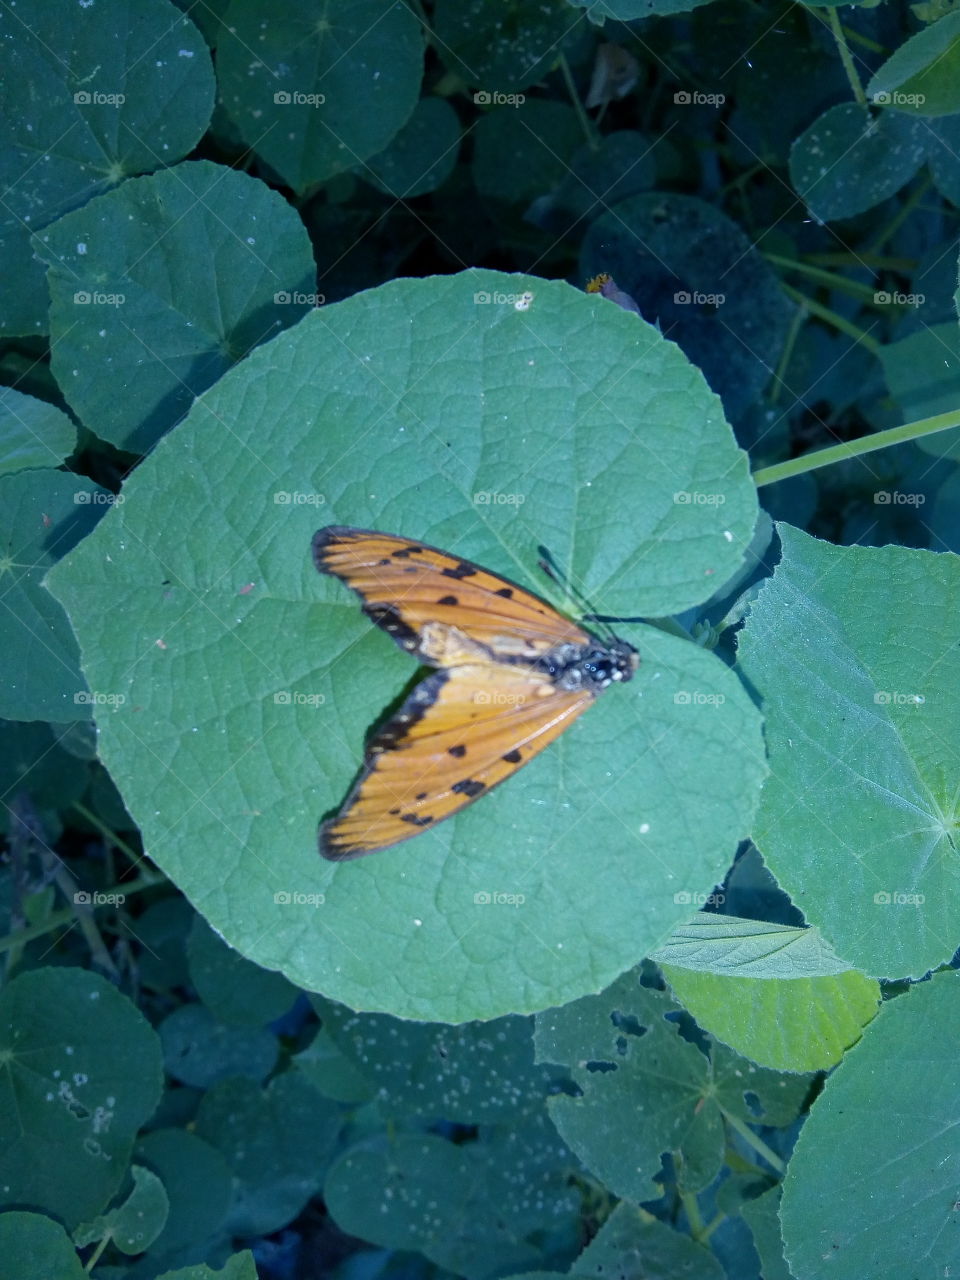 death butterfly